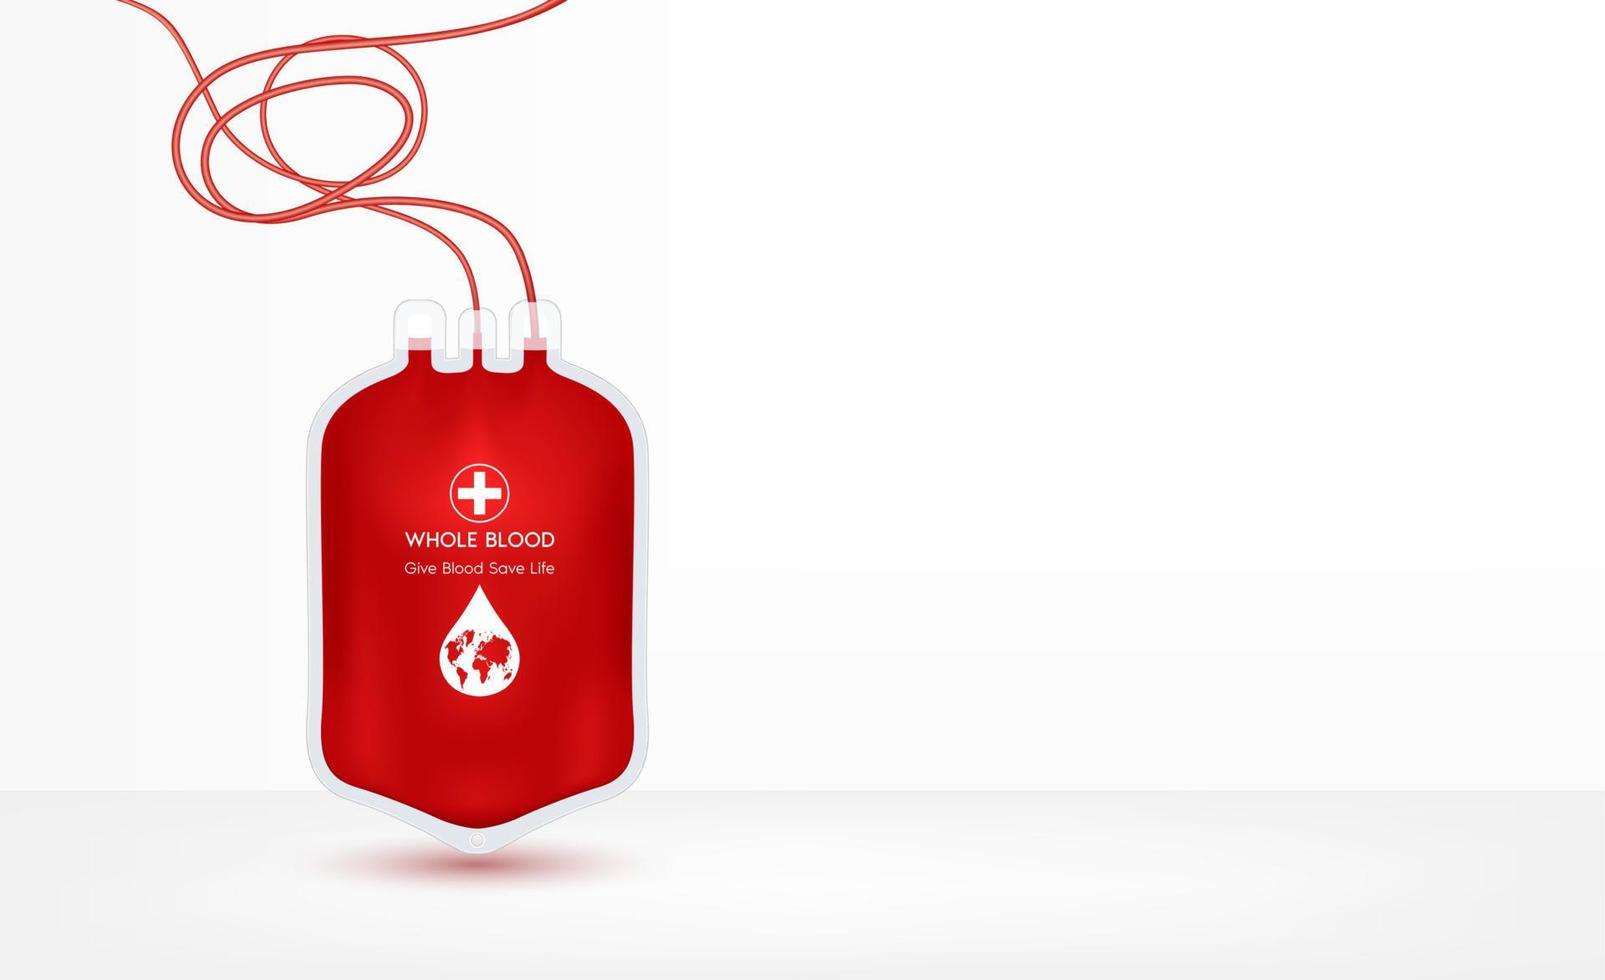 Weltblutspendetag. Geben Sie Blut retten Leben, eine Tüte mit frischem Blut oder gepackte rote Blutkörperchen auf weißem Hintergrund. Spende oder Therapie oder Austauschtransfusion. medizinisches Zeichen. 3D-Vektor-eps10-Illustration. vektor